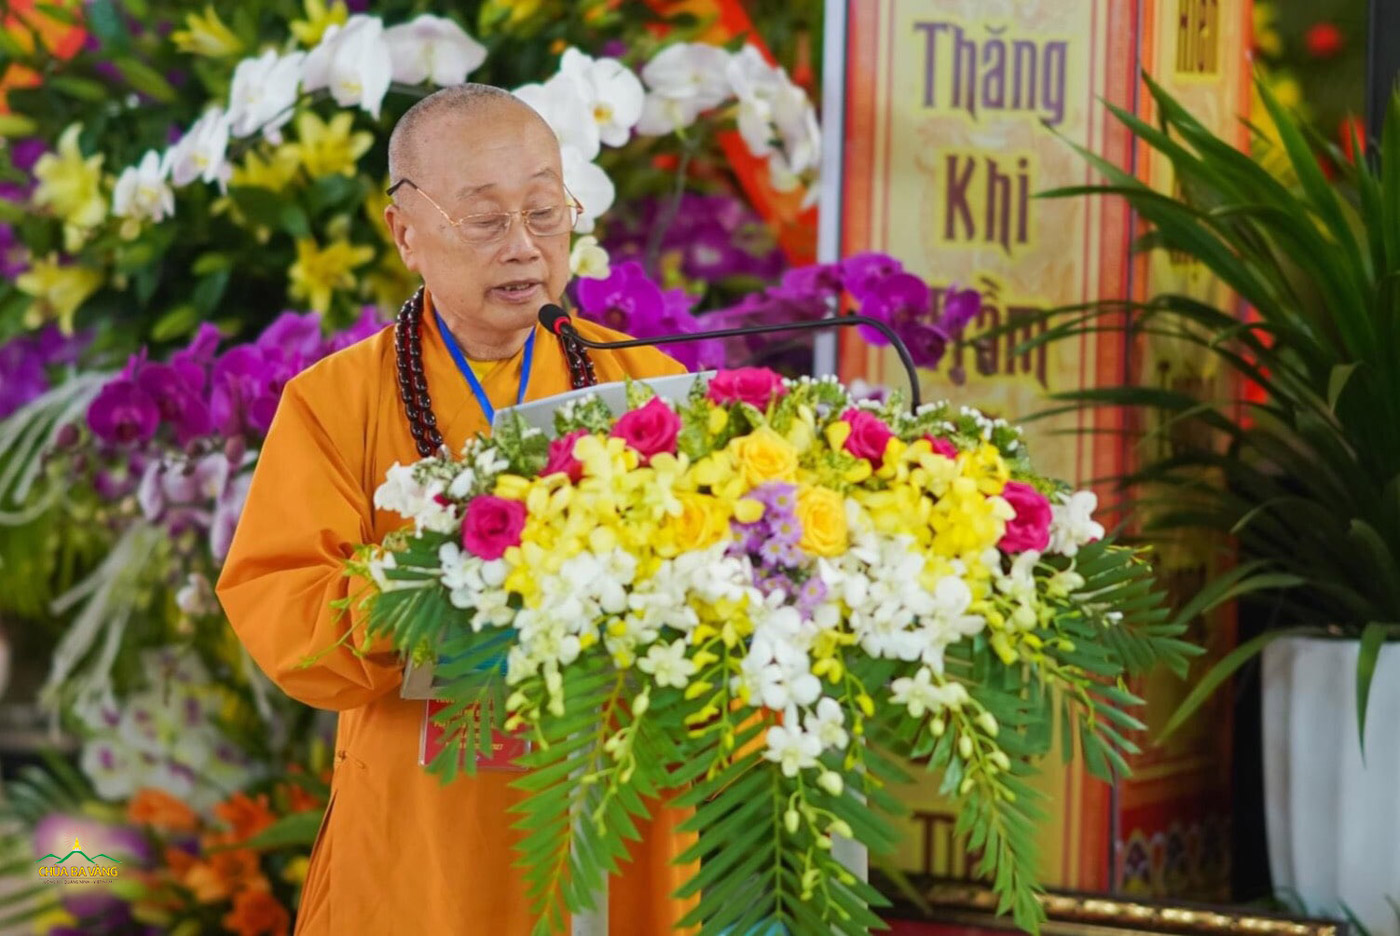 HT. Thích Tánh Nhiếp – UVTT HĐTS, Trưởng ban Trị sự GHPGVN tỉnh Quảng Bình đại diện phát biểu trong đại hội.